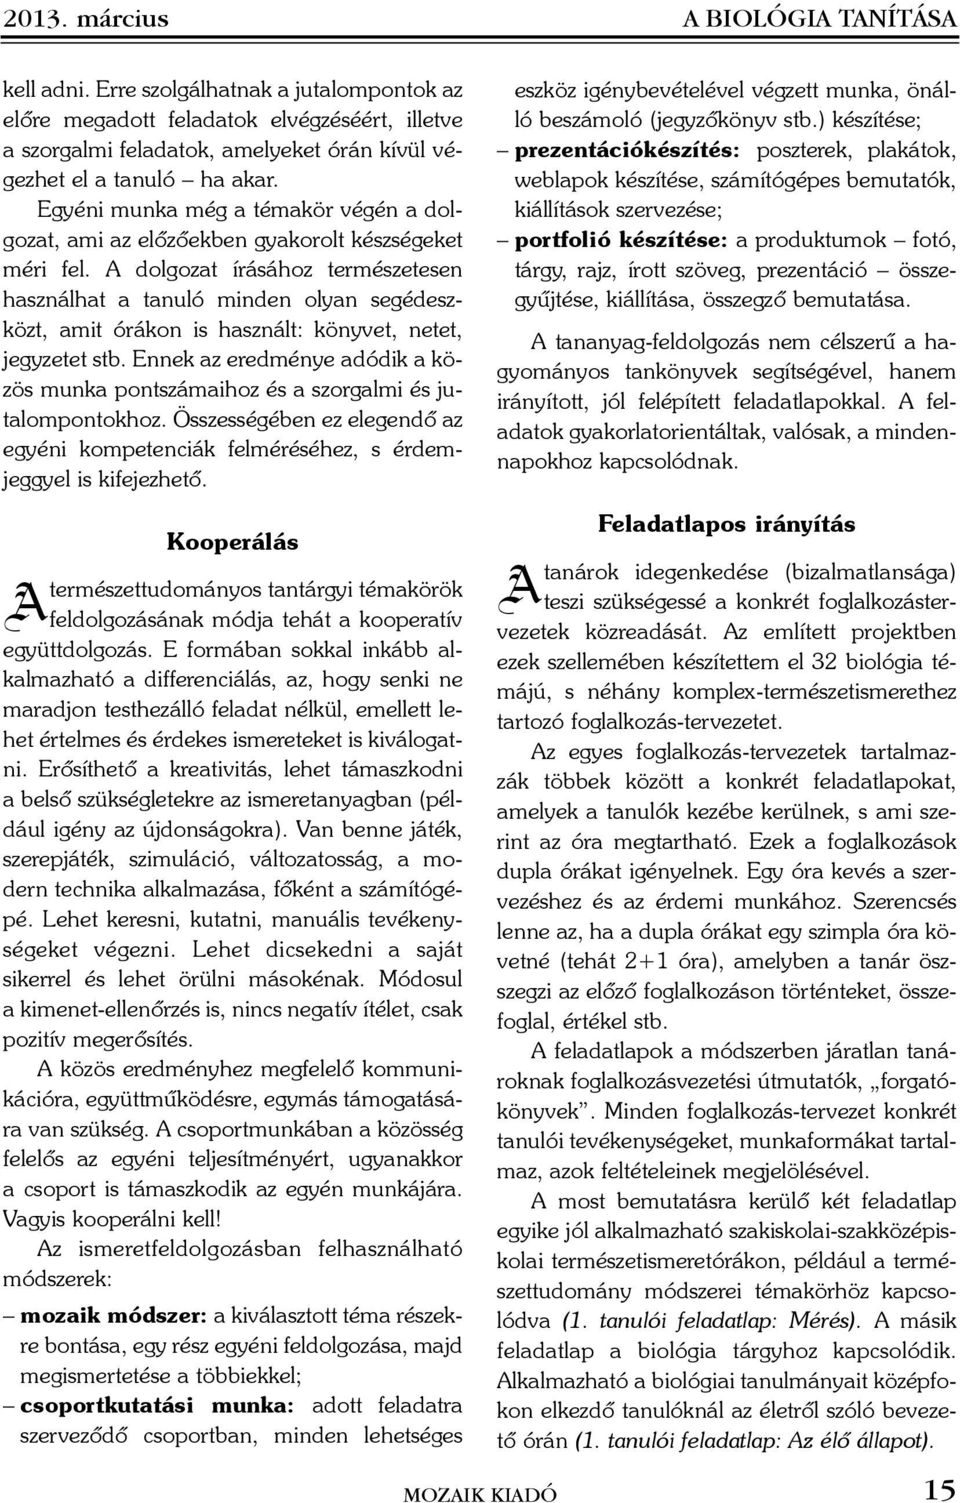 TARTALOM A BIOLÓGIA TANÍTÁSA. módszertani folyóirat - PDF Ingyenes letöltés